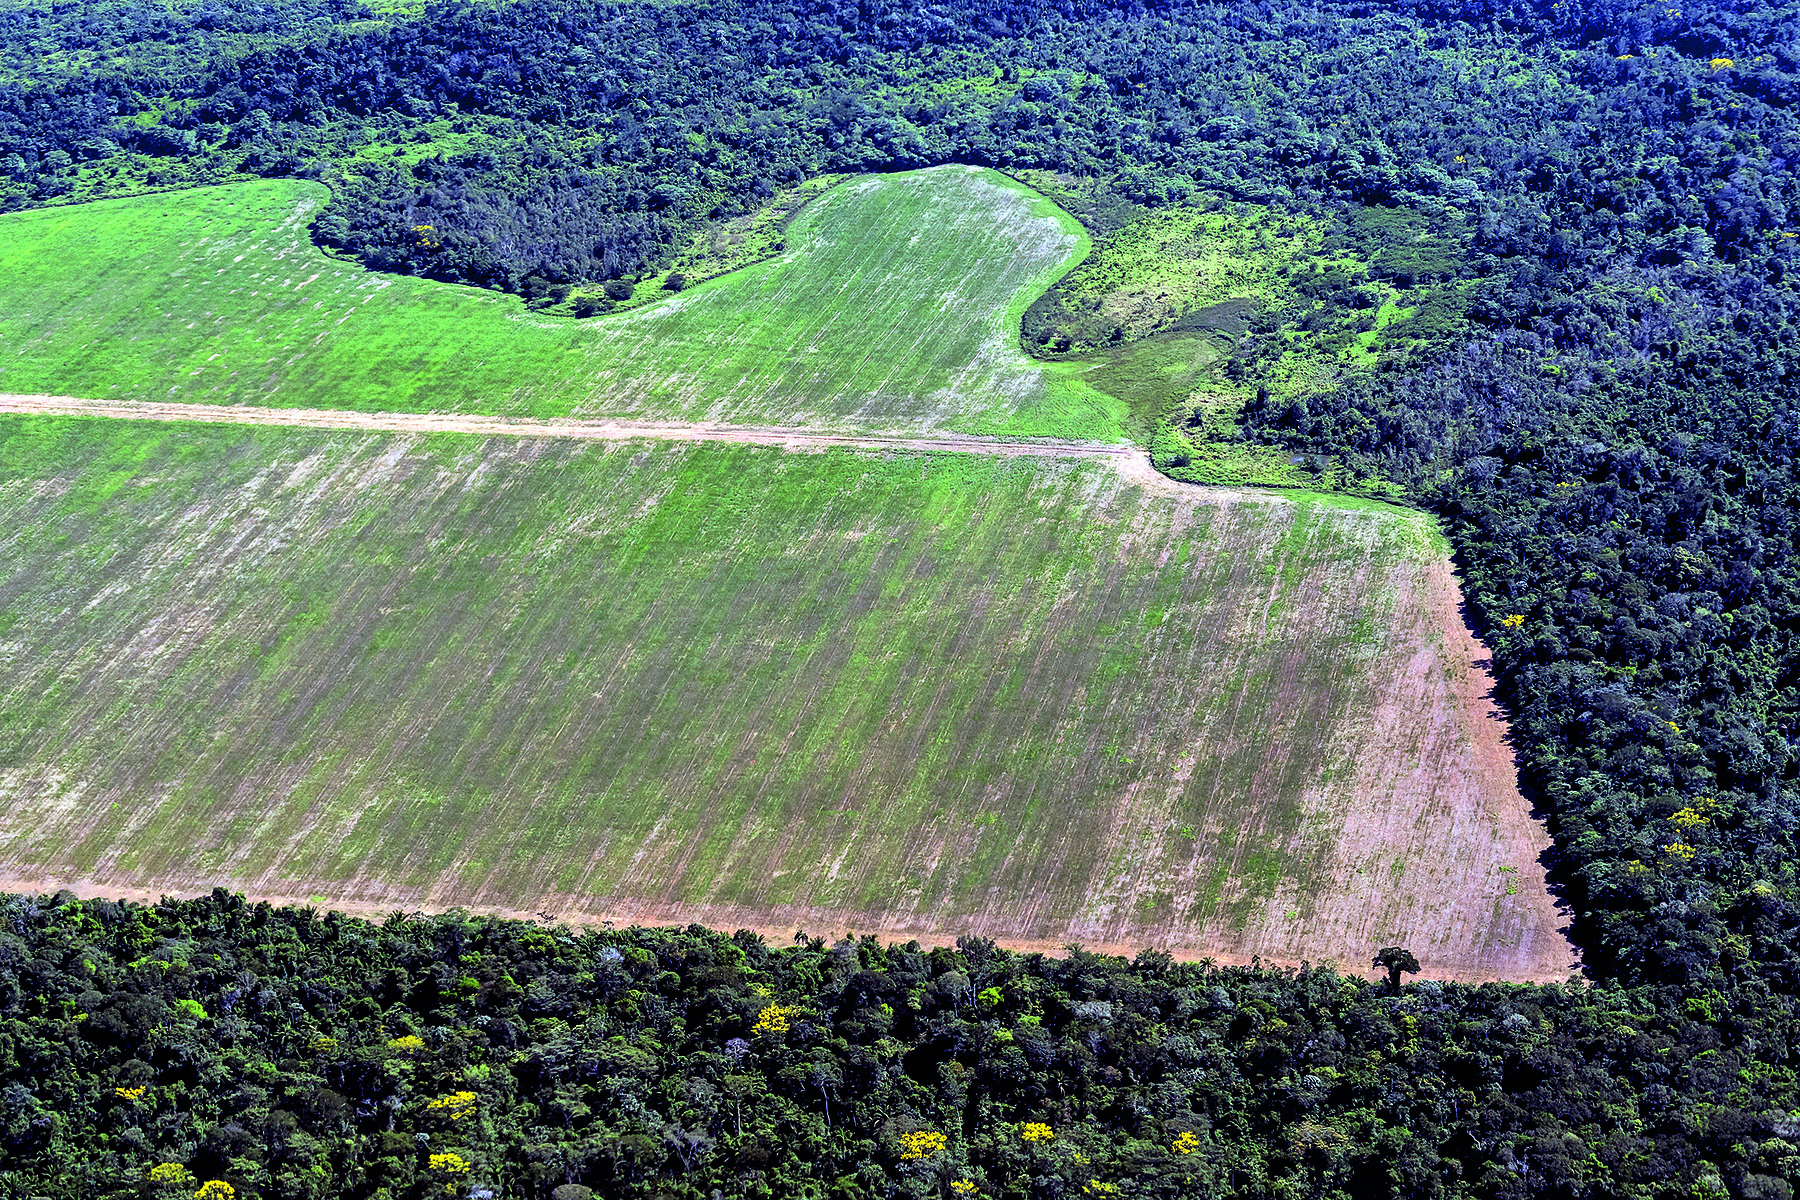 Fotografia. Vista aérea com destaque para uma área desmatada, que aparece em tons de verde claro e marrom. Ao redor há vegetação densa em tons de verde-escuro